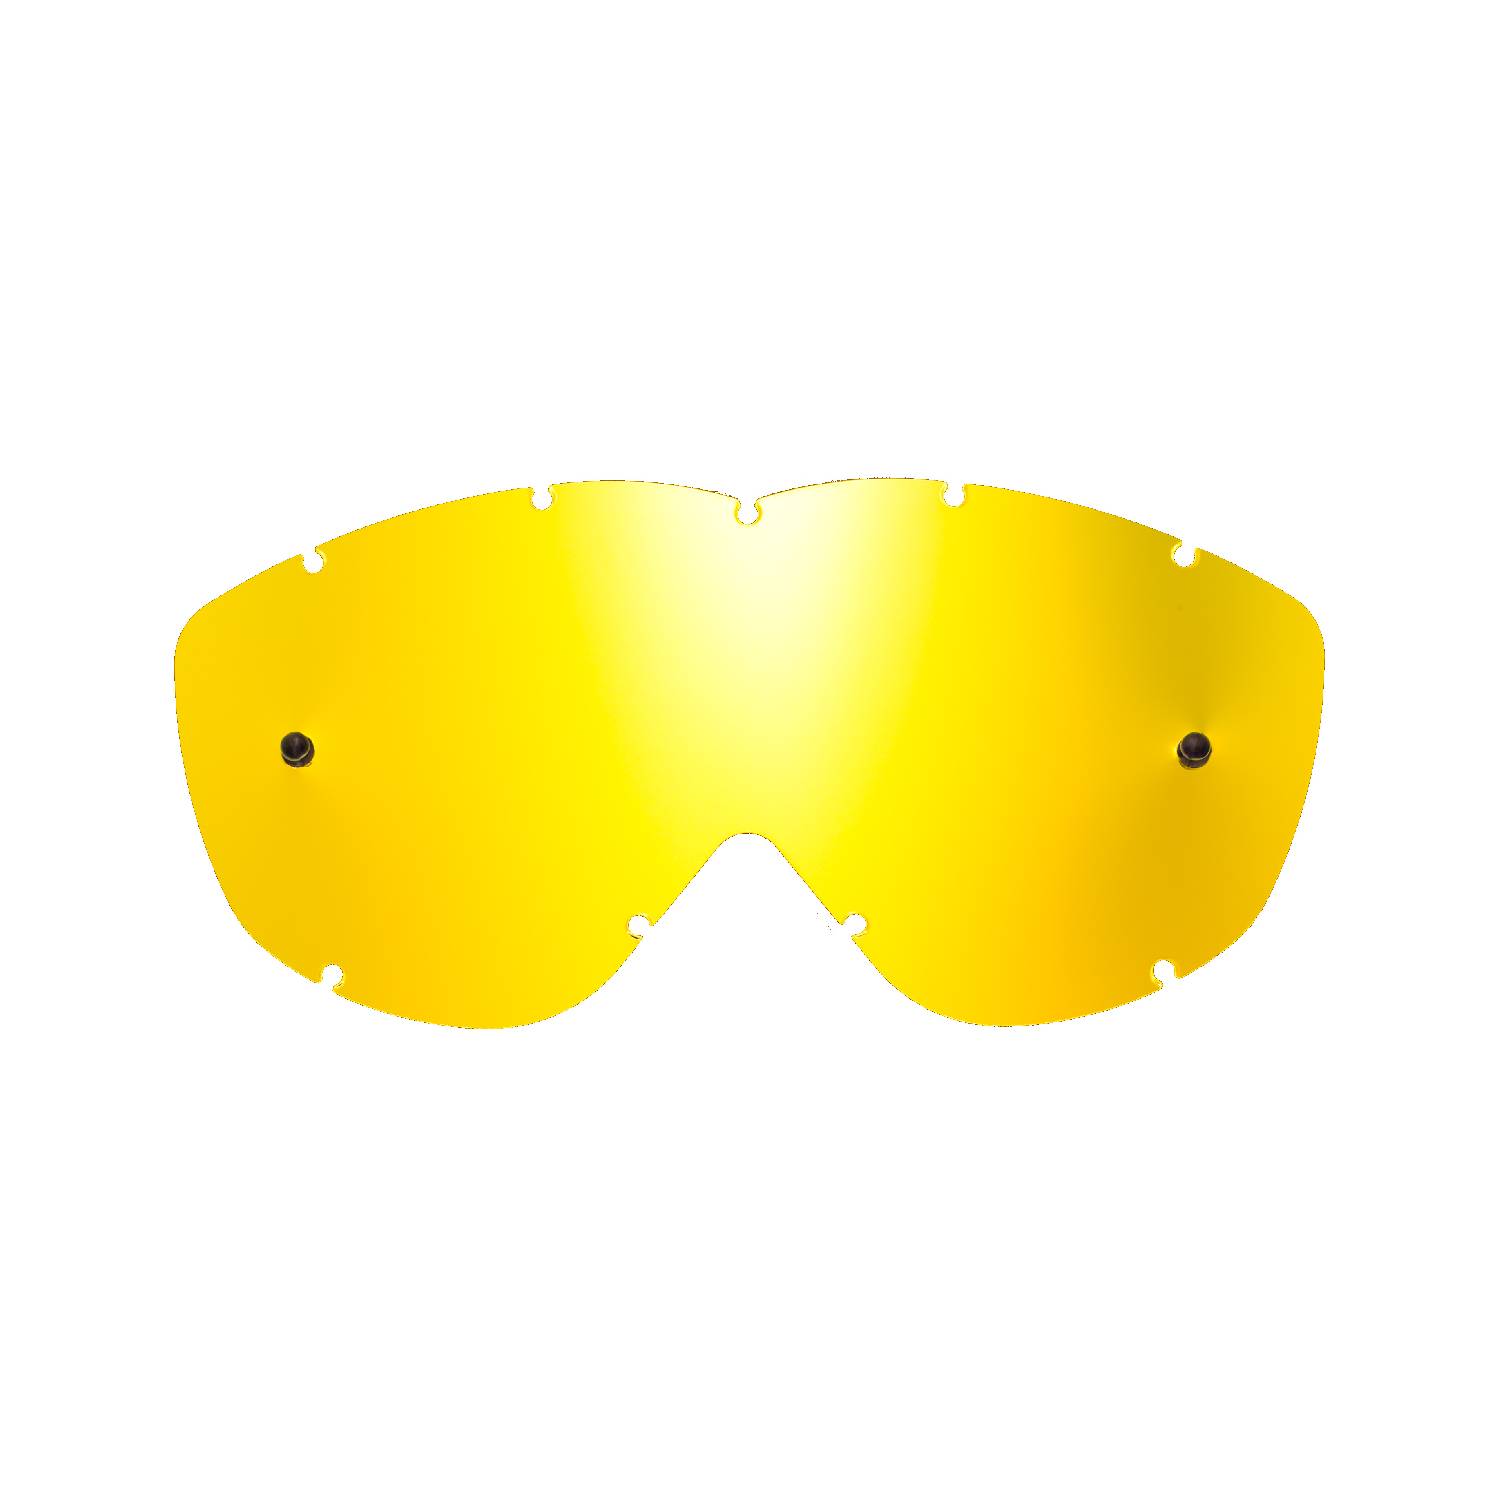 Lente di ricambio oro specchiato compatibile per occhiale/maschera Spy Alloy / Targa